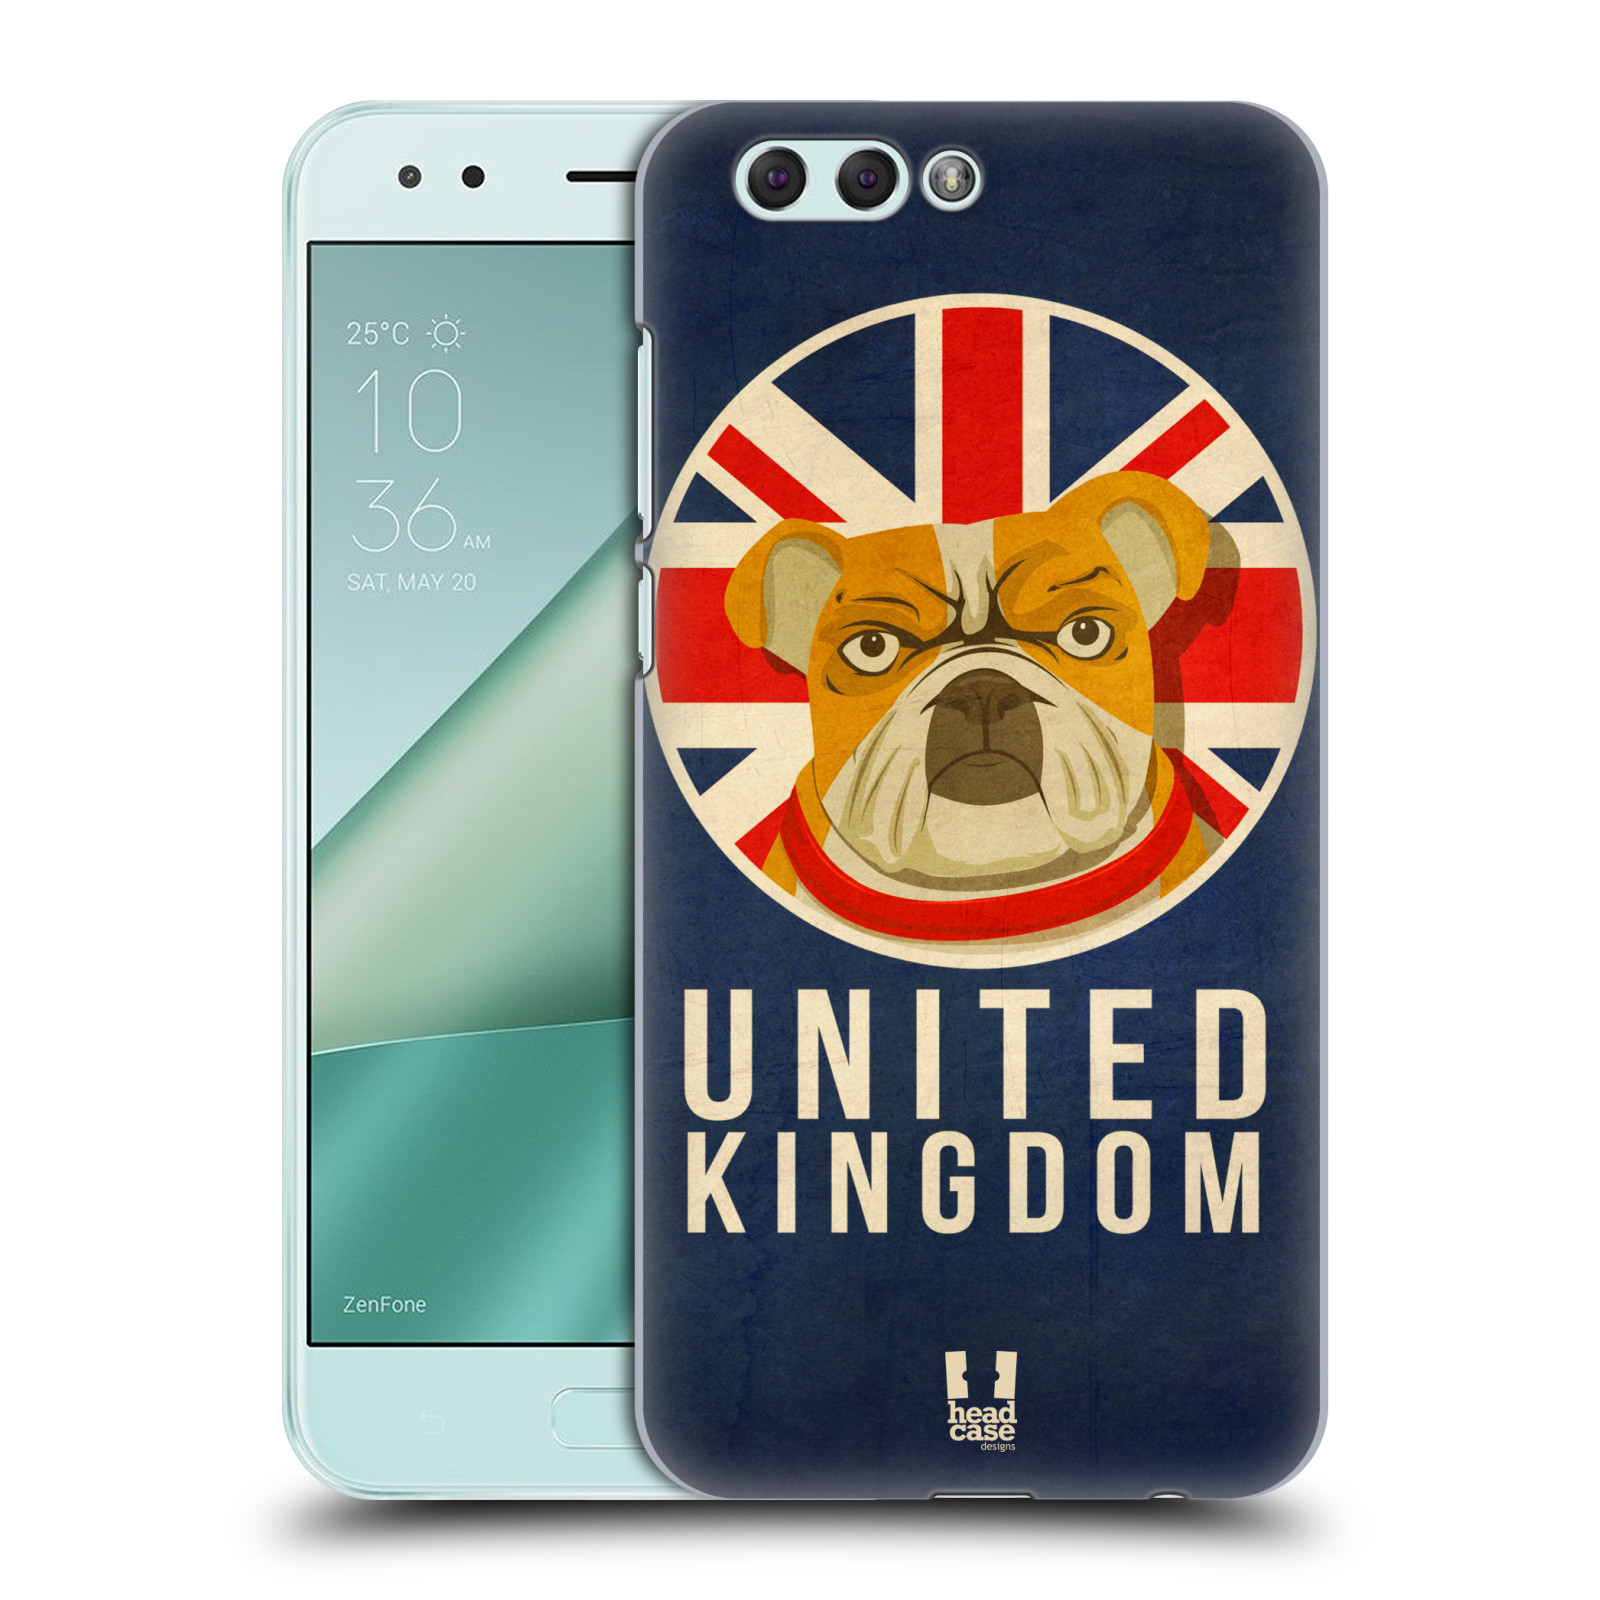 HEAD CASE plastový obal na mobil Asus Zenfone 4 ZE554KL vzor Patriotismus zvíře symbol Buldok UK